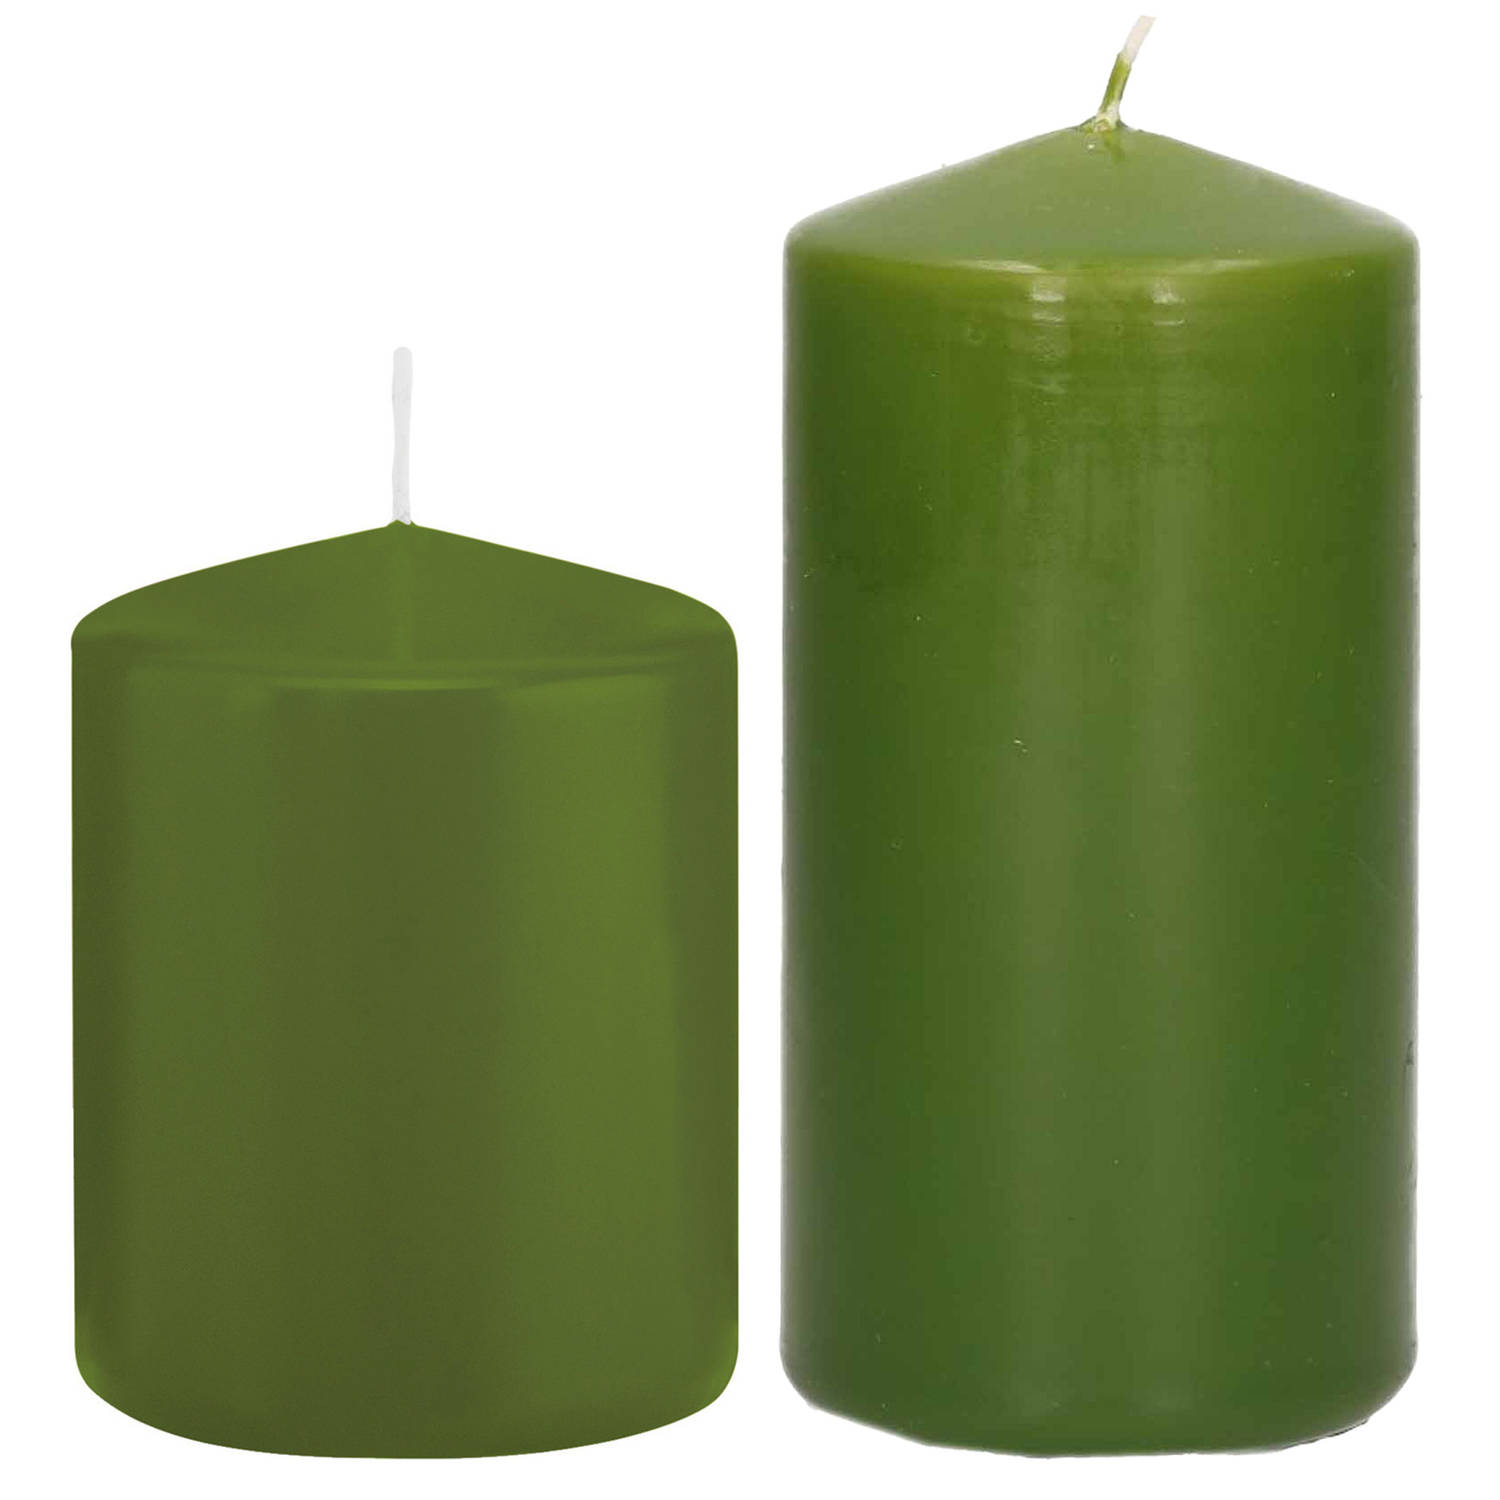 Trend Candles - Stompkaarsen set 2x stuks olijfgroen 8 en 12 cm